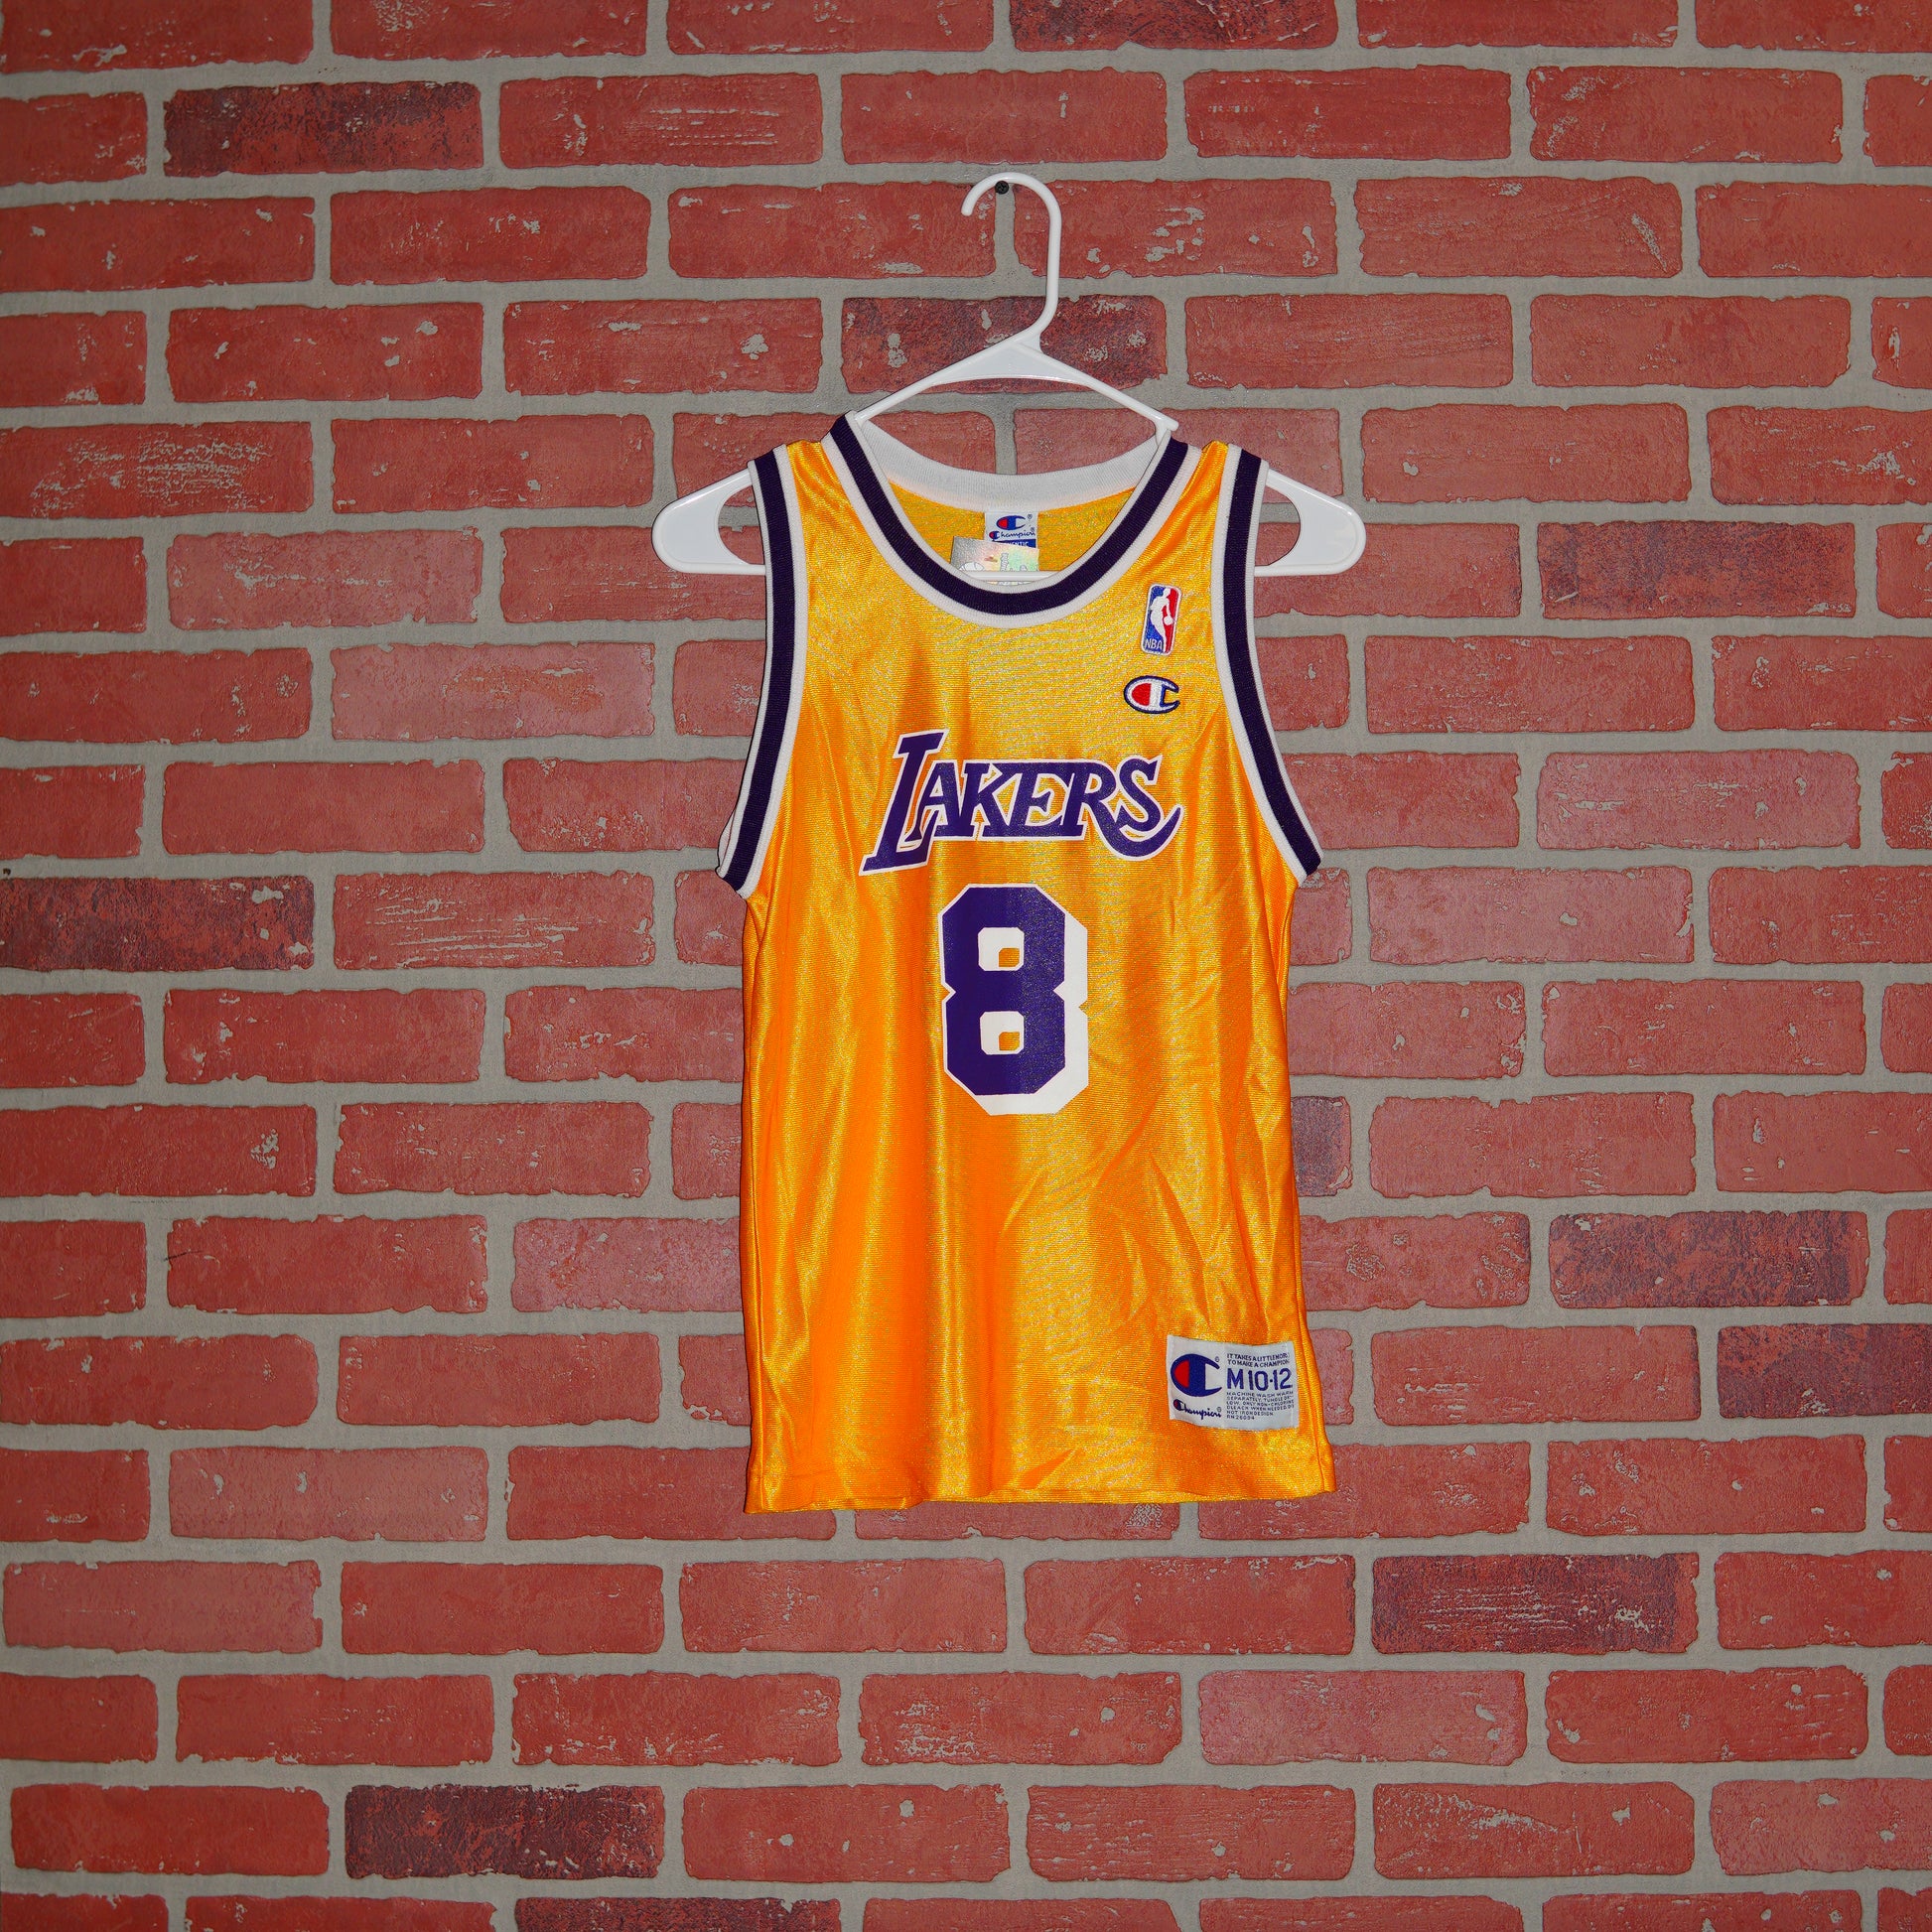 Buy Vintage Nike Kobe Bryant LA Lakers Jersey Online in India 